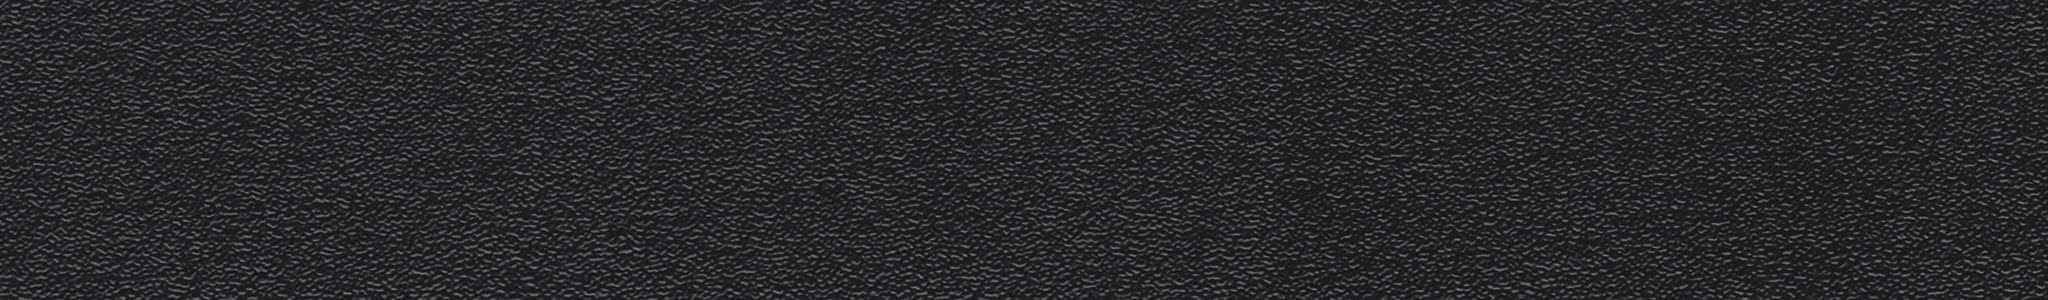 ABS 107 čierna perla 22x2mm HU 19015